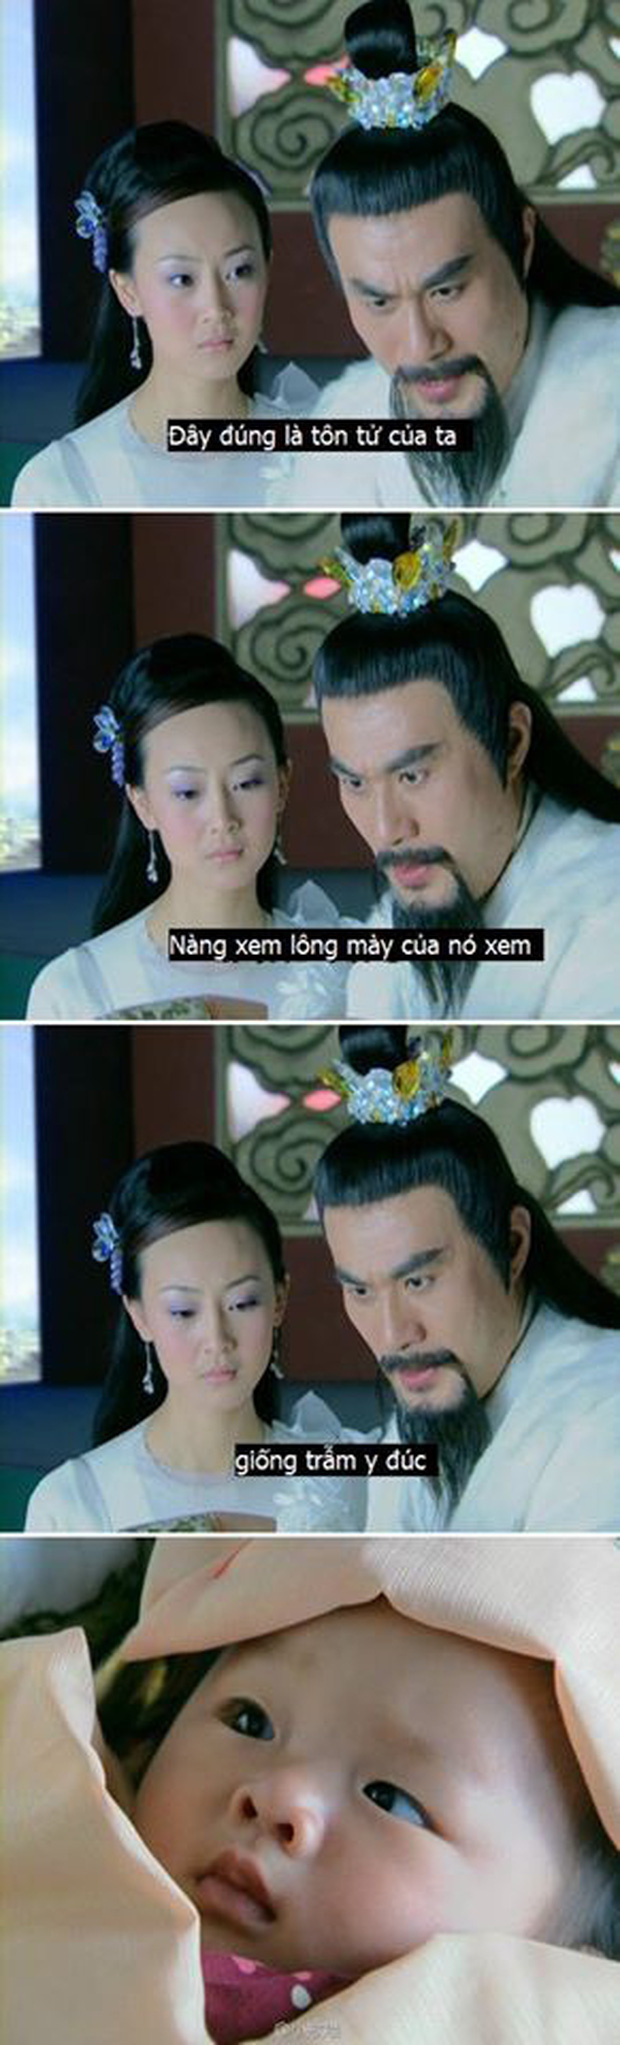 TV Show - Loạt câu thoại ngớ ngẩn trong phim Hoa ngữ khiến khán giả cười bò (Hình 9).